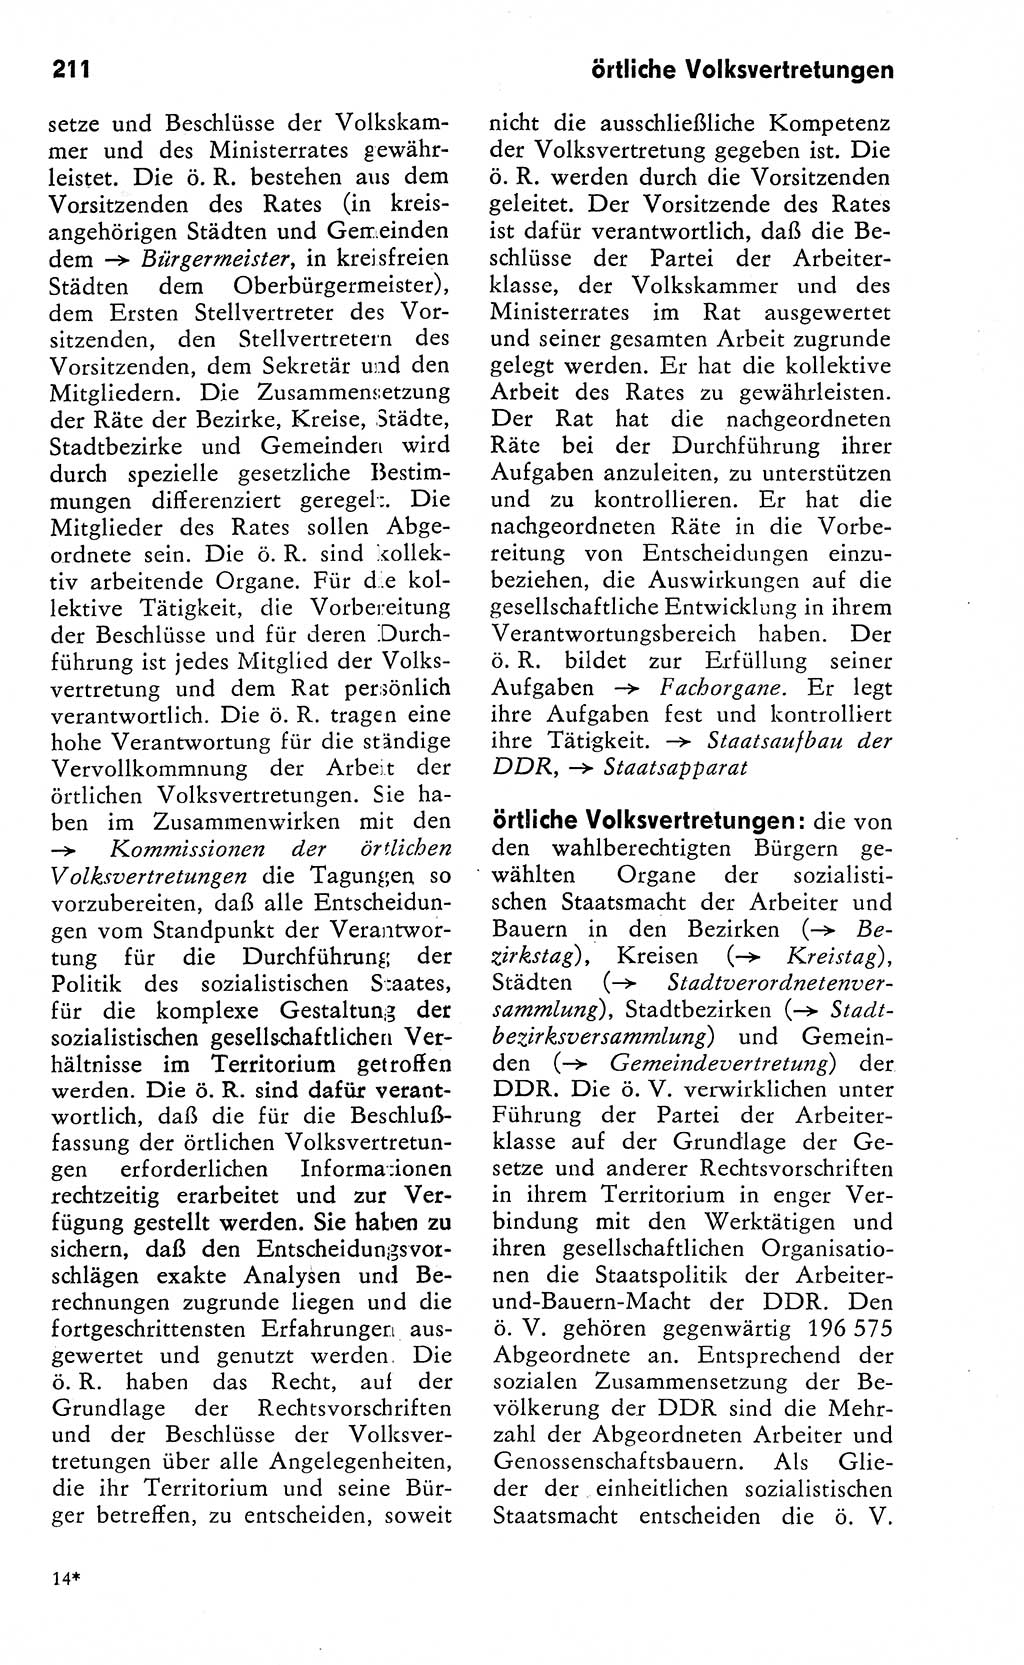 Wörterbuch zum sozialistischen Staat [Deutsche Demokratische Republik (DDR)] 1974, Seite 211 (Wb. soz. St. DDR 1974, S. 211)